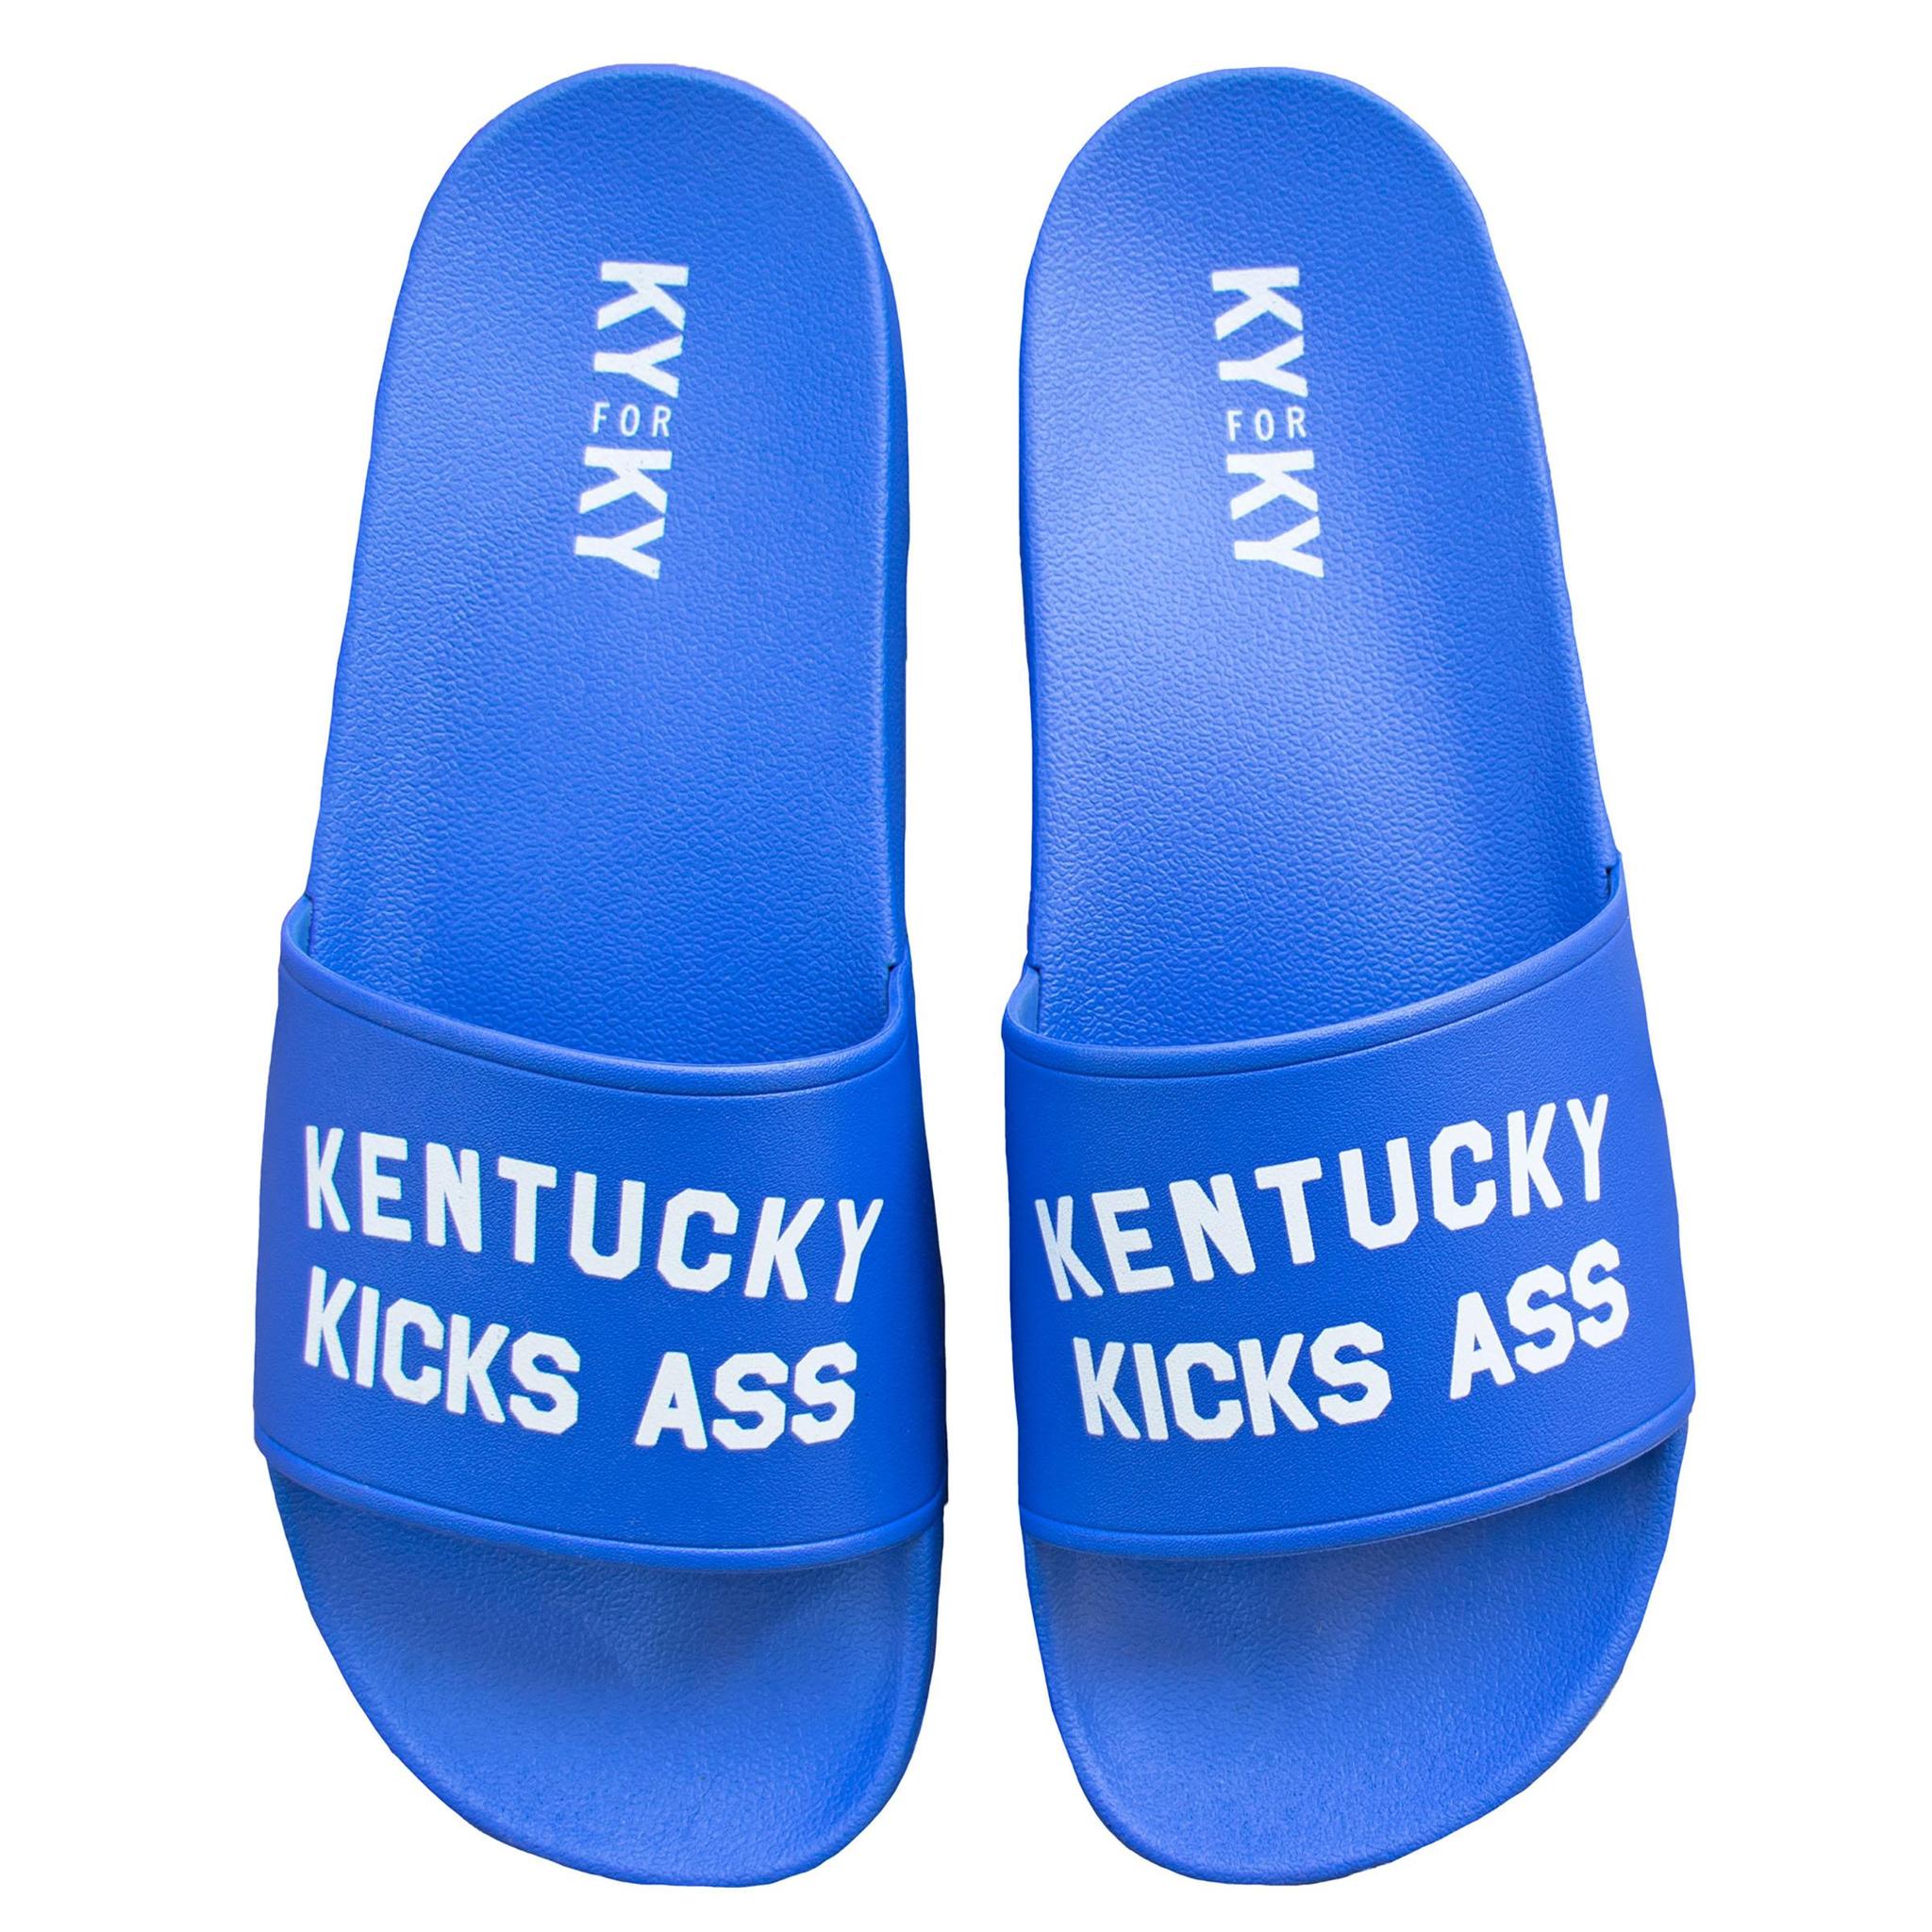 Kentucky Kicks Ass Slide Sandals-KY for KY Store